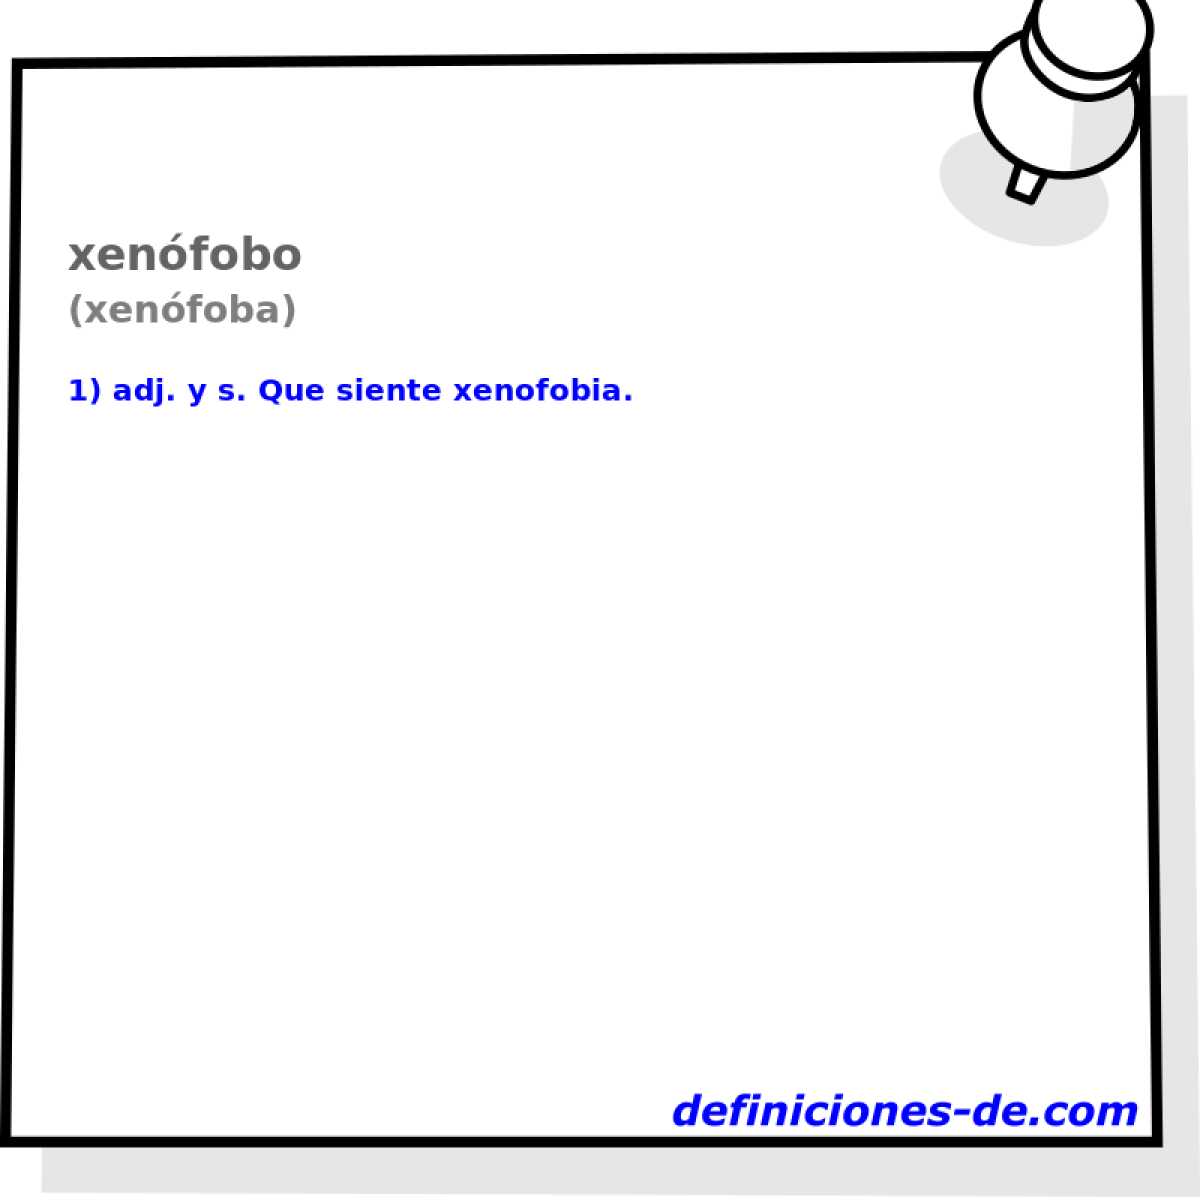 xenfobo (xenfoba)